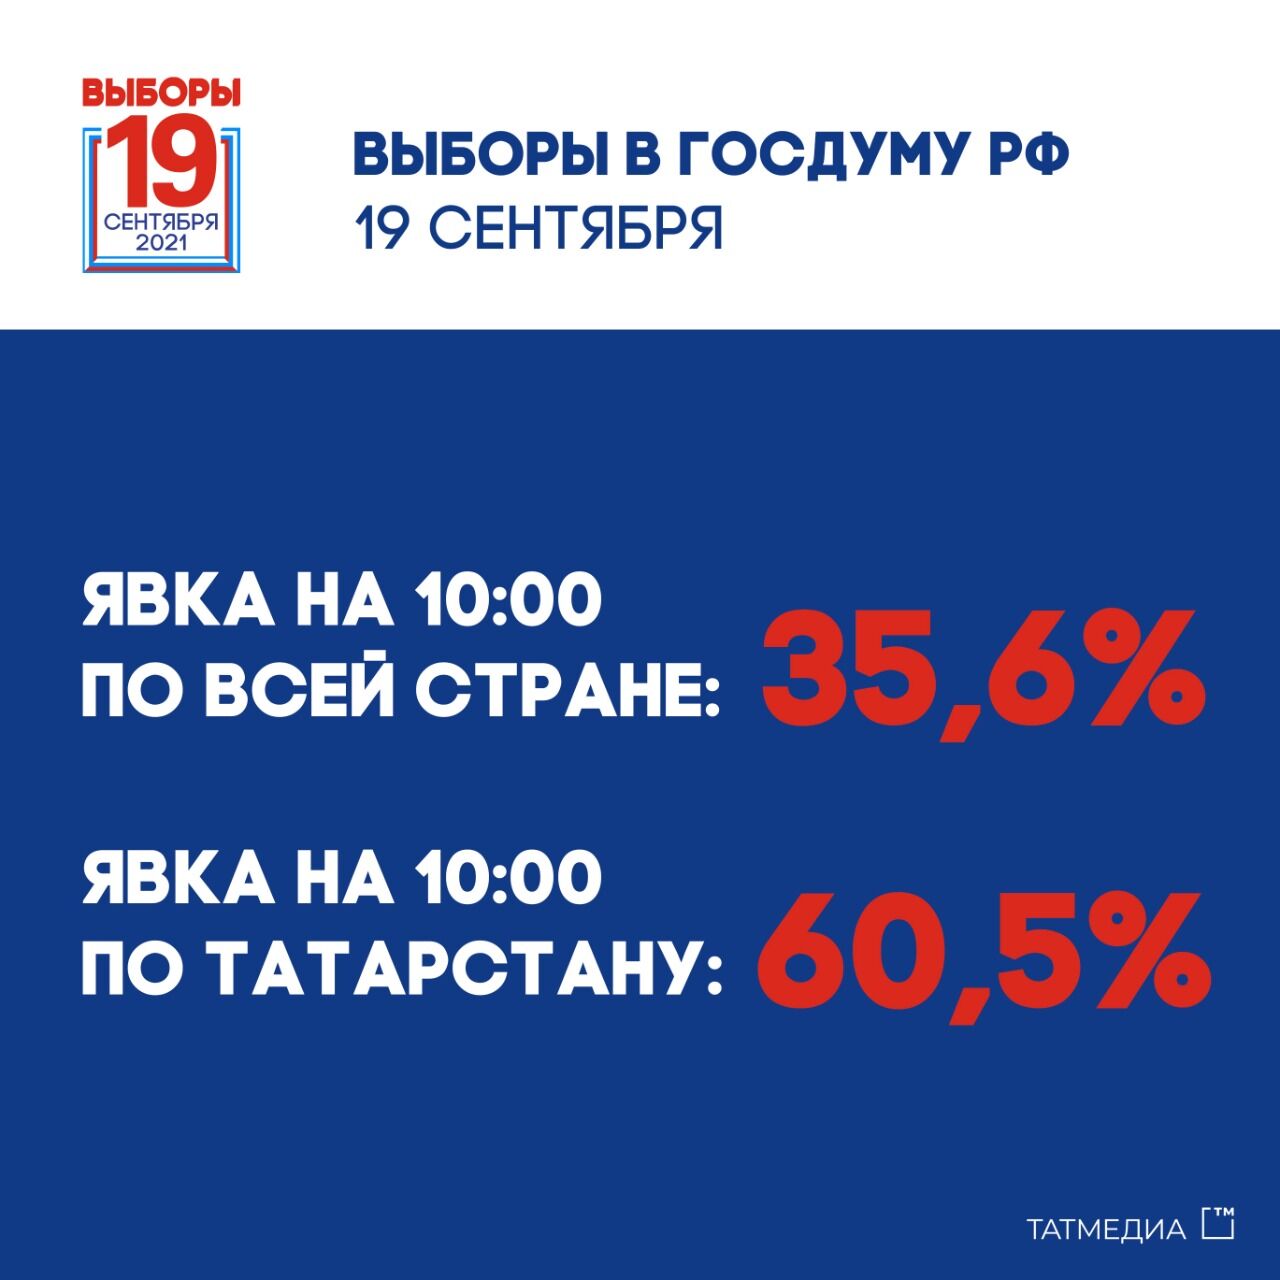 К 10 часам в выборах в Госдуму РФ приняли участие 60,5% татарстанцев